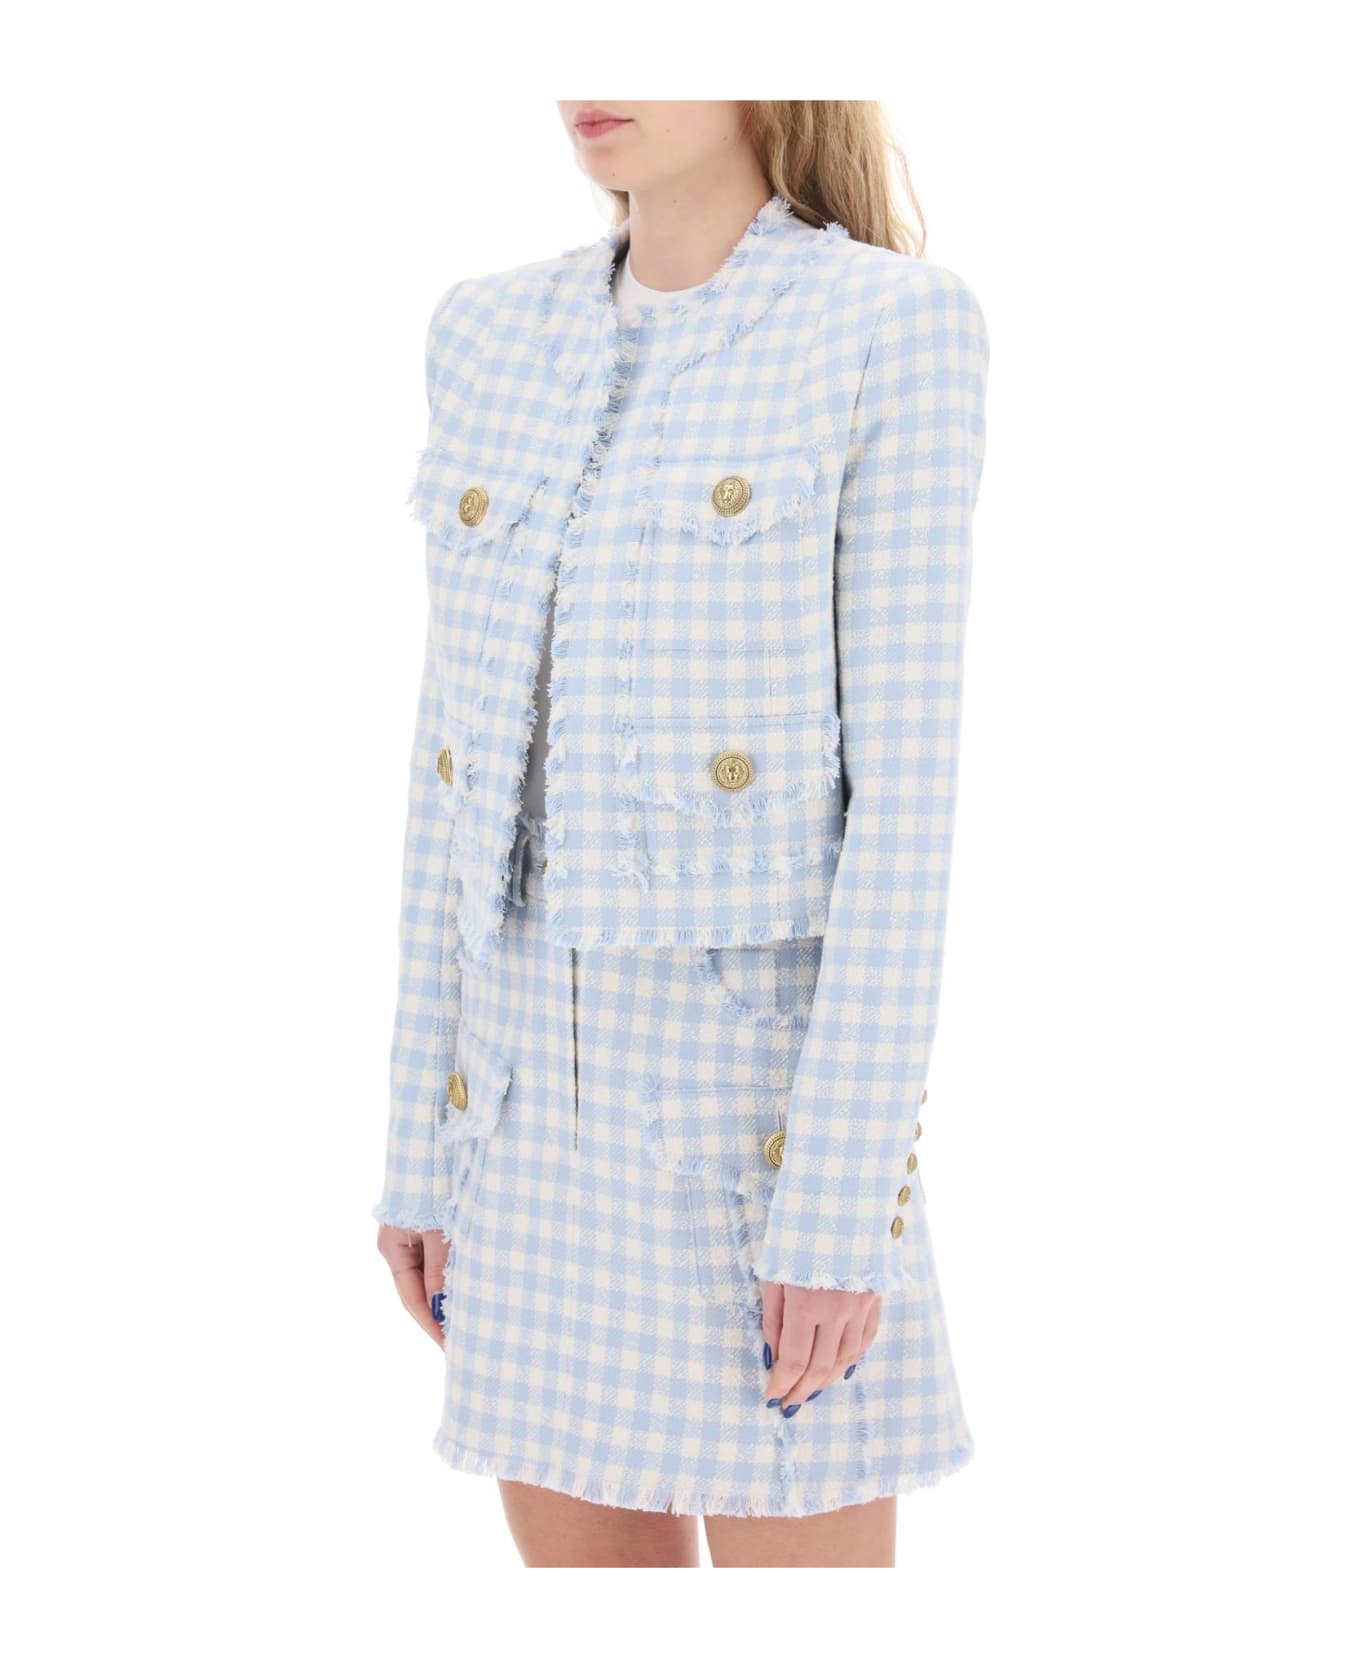 Balmain Bolero Jacket In Tweed With Gingham Pattern - Bleu pale/blanc ブレザー